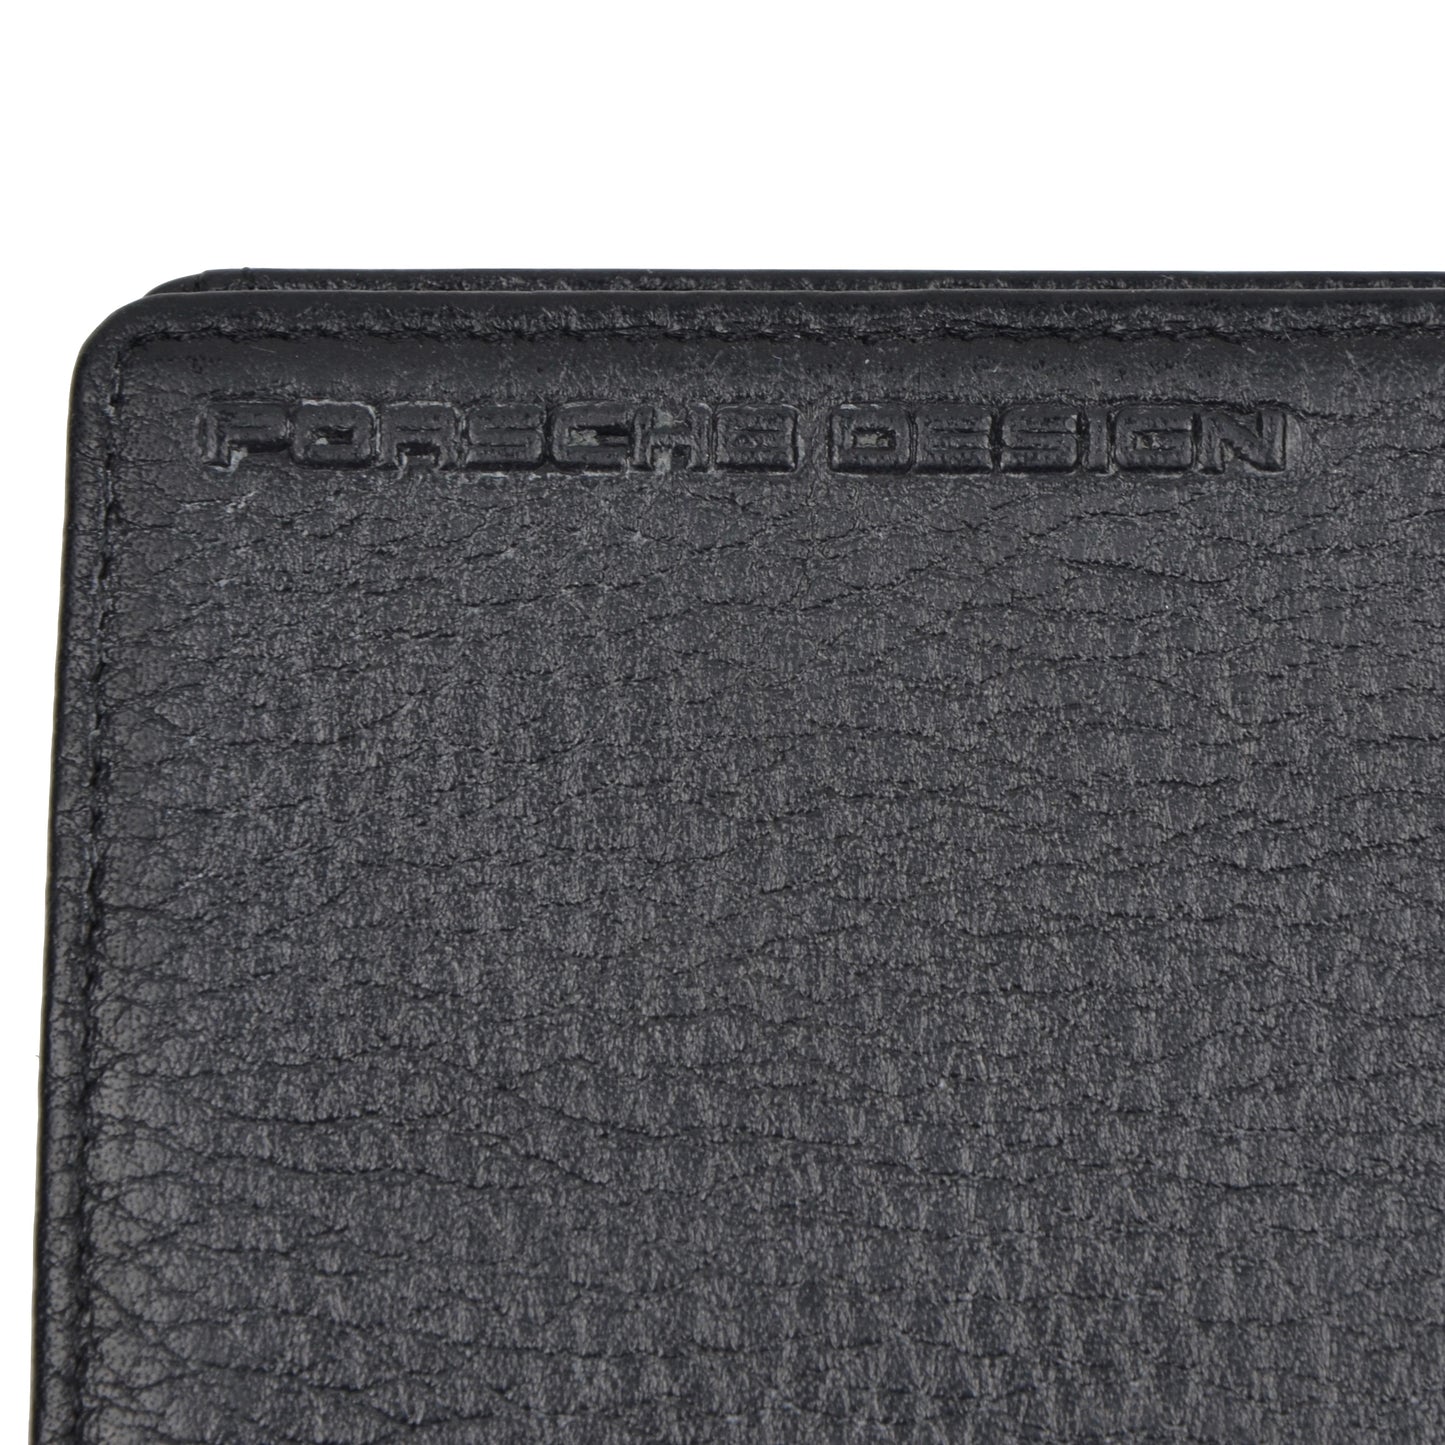 Porsche Design P3300 Leather Money Clip/Wallet - Black